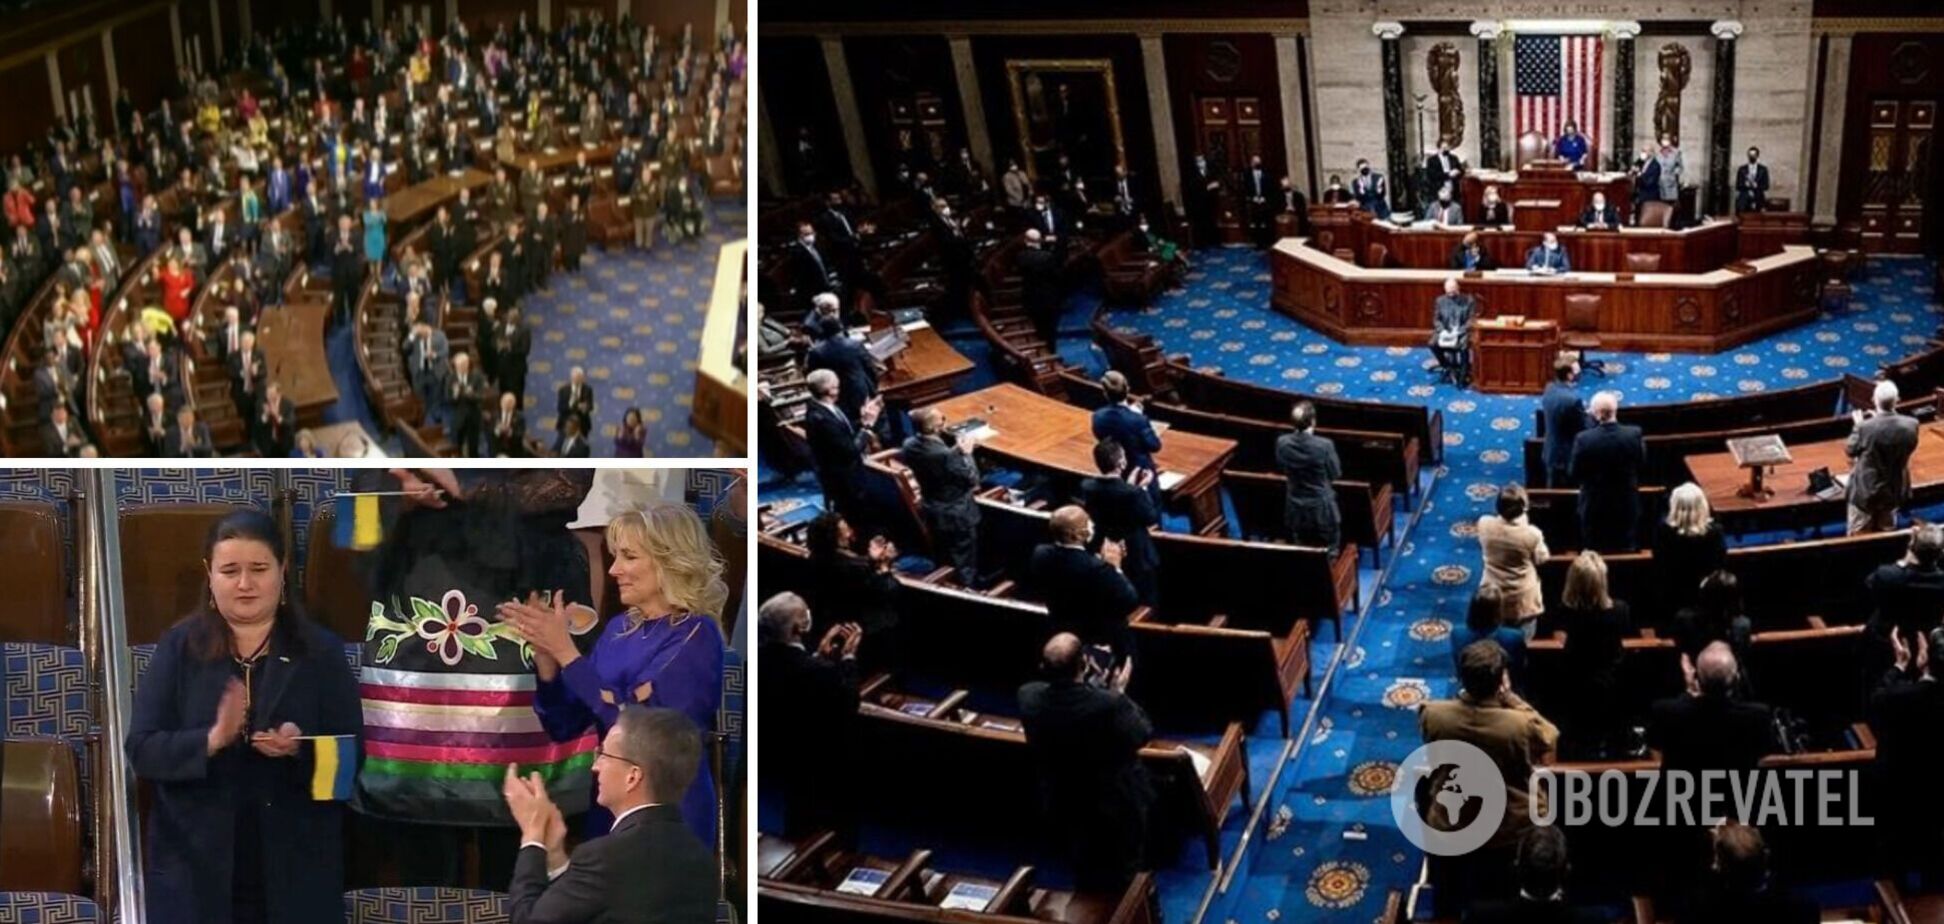 Конгресс США поприветствовал овациями Украину и ее посла Маркарову: трогательные фото